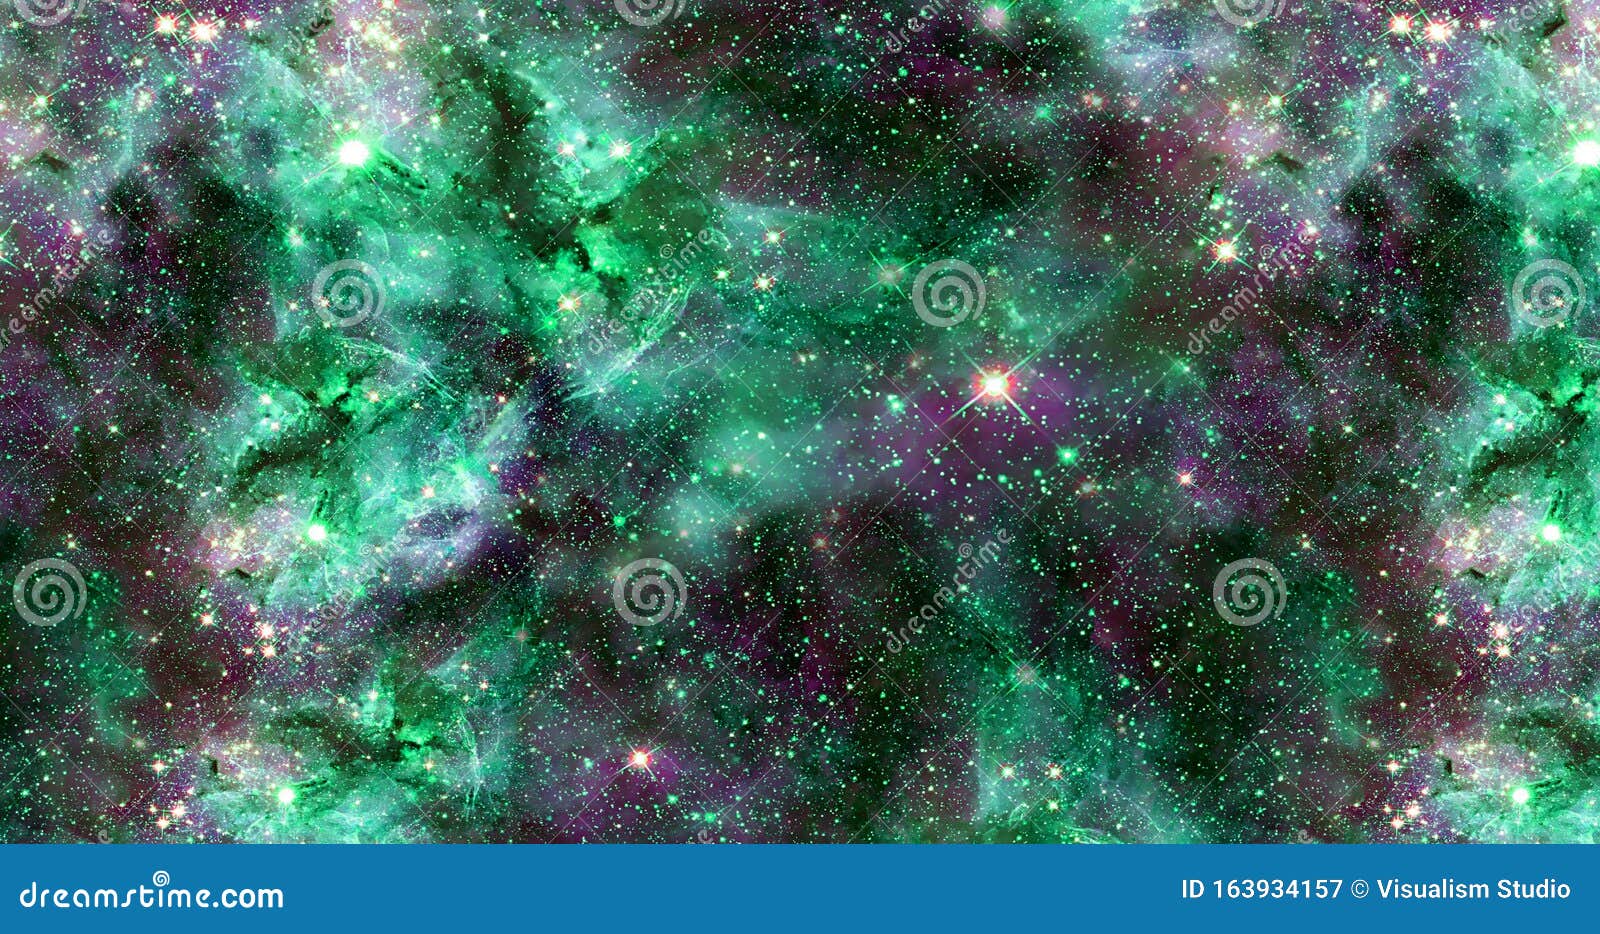 Thiên hà trừu tượng là một nghệ thuật độc đáo của con người để miêu tả những vùng trời xa xôi, cùng những hành tinh lạ và những hệ tiểu hành tinh đầy màu sắc. Hãy khám phá những hình ảnh đẹp đến ngỡ ngàng về thiên hà trừu tượng và đắm mình trong thế giới lan toả sự độc đáo và sáng tạo.